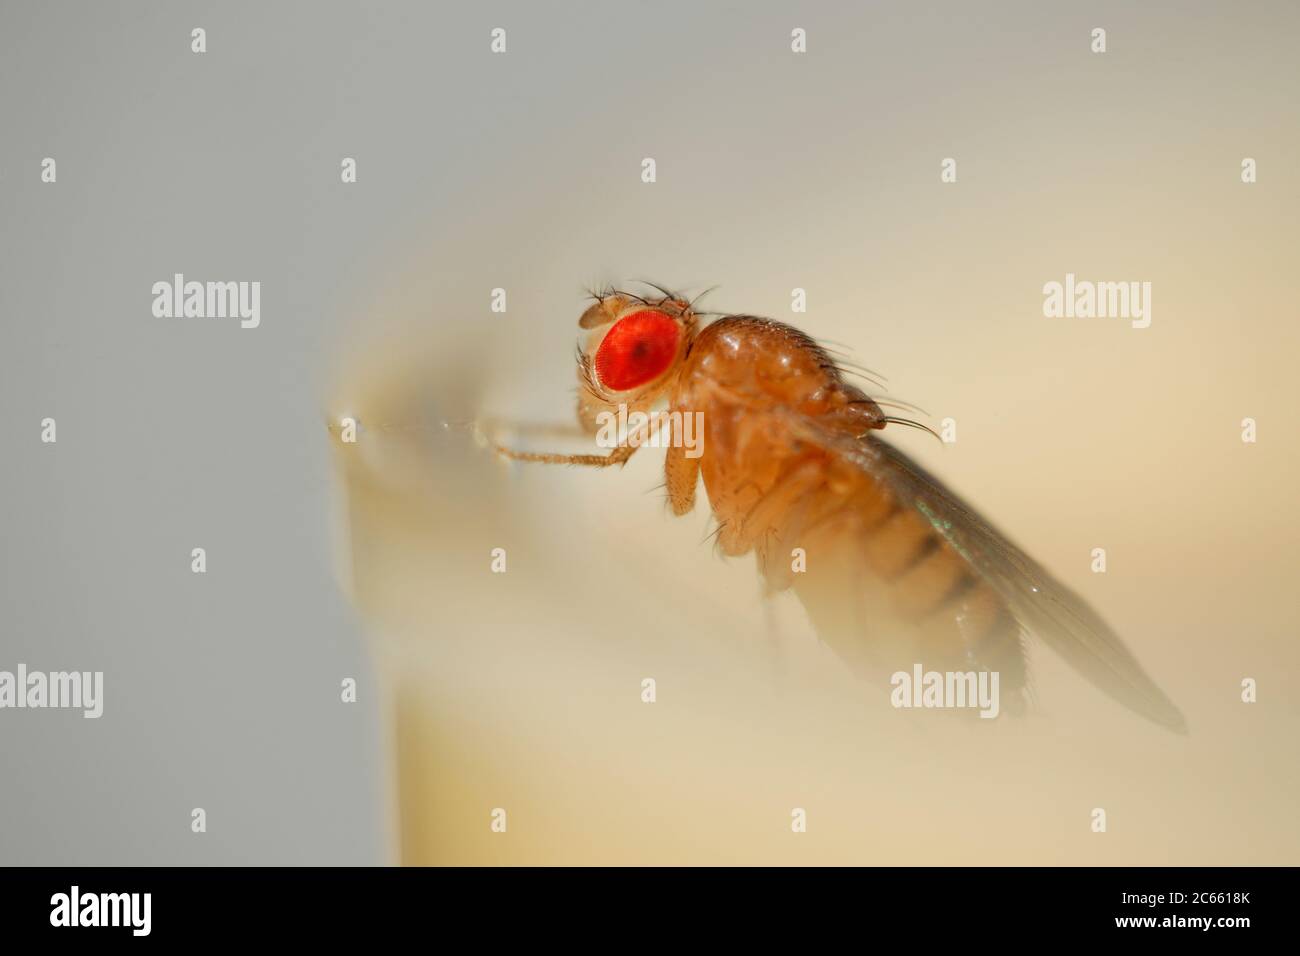 Wild type Fruit Fly (Drosophila melanogaster) lab culture. Stock Photo